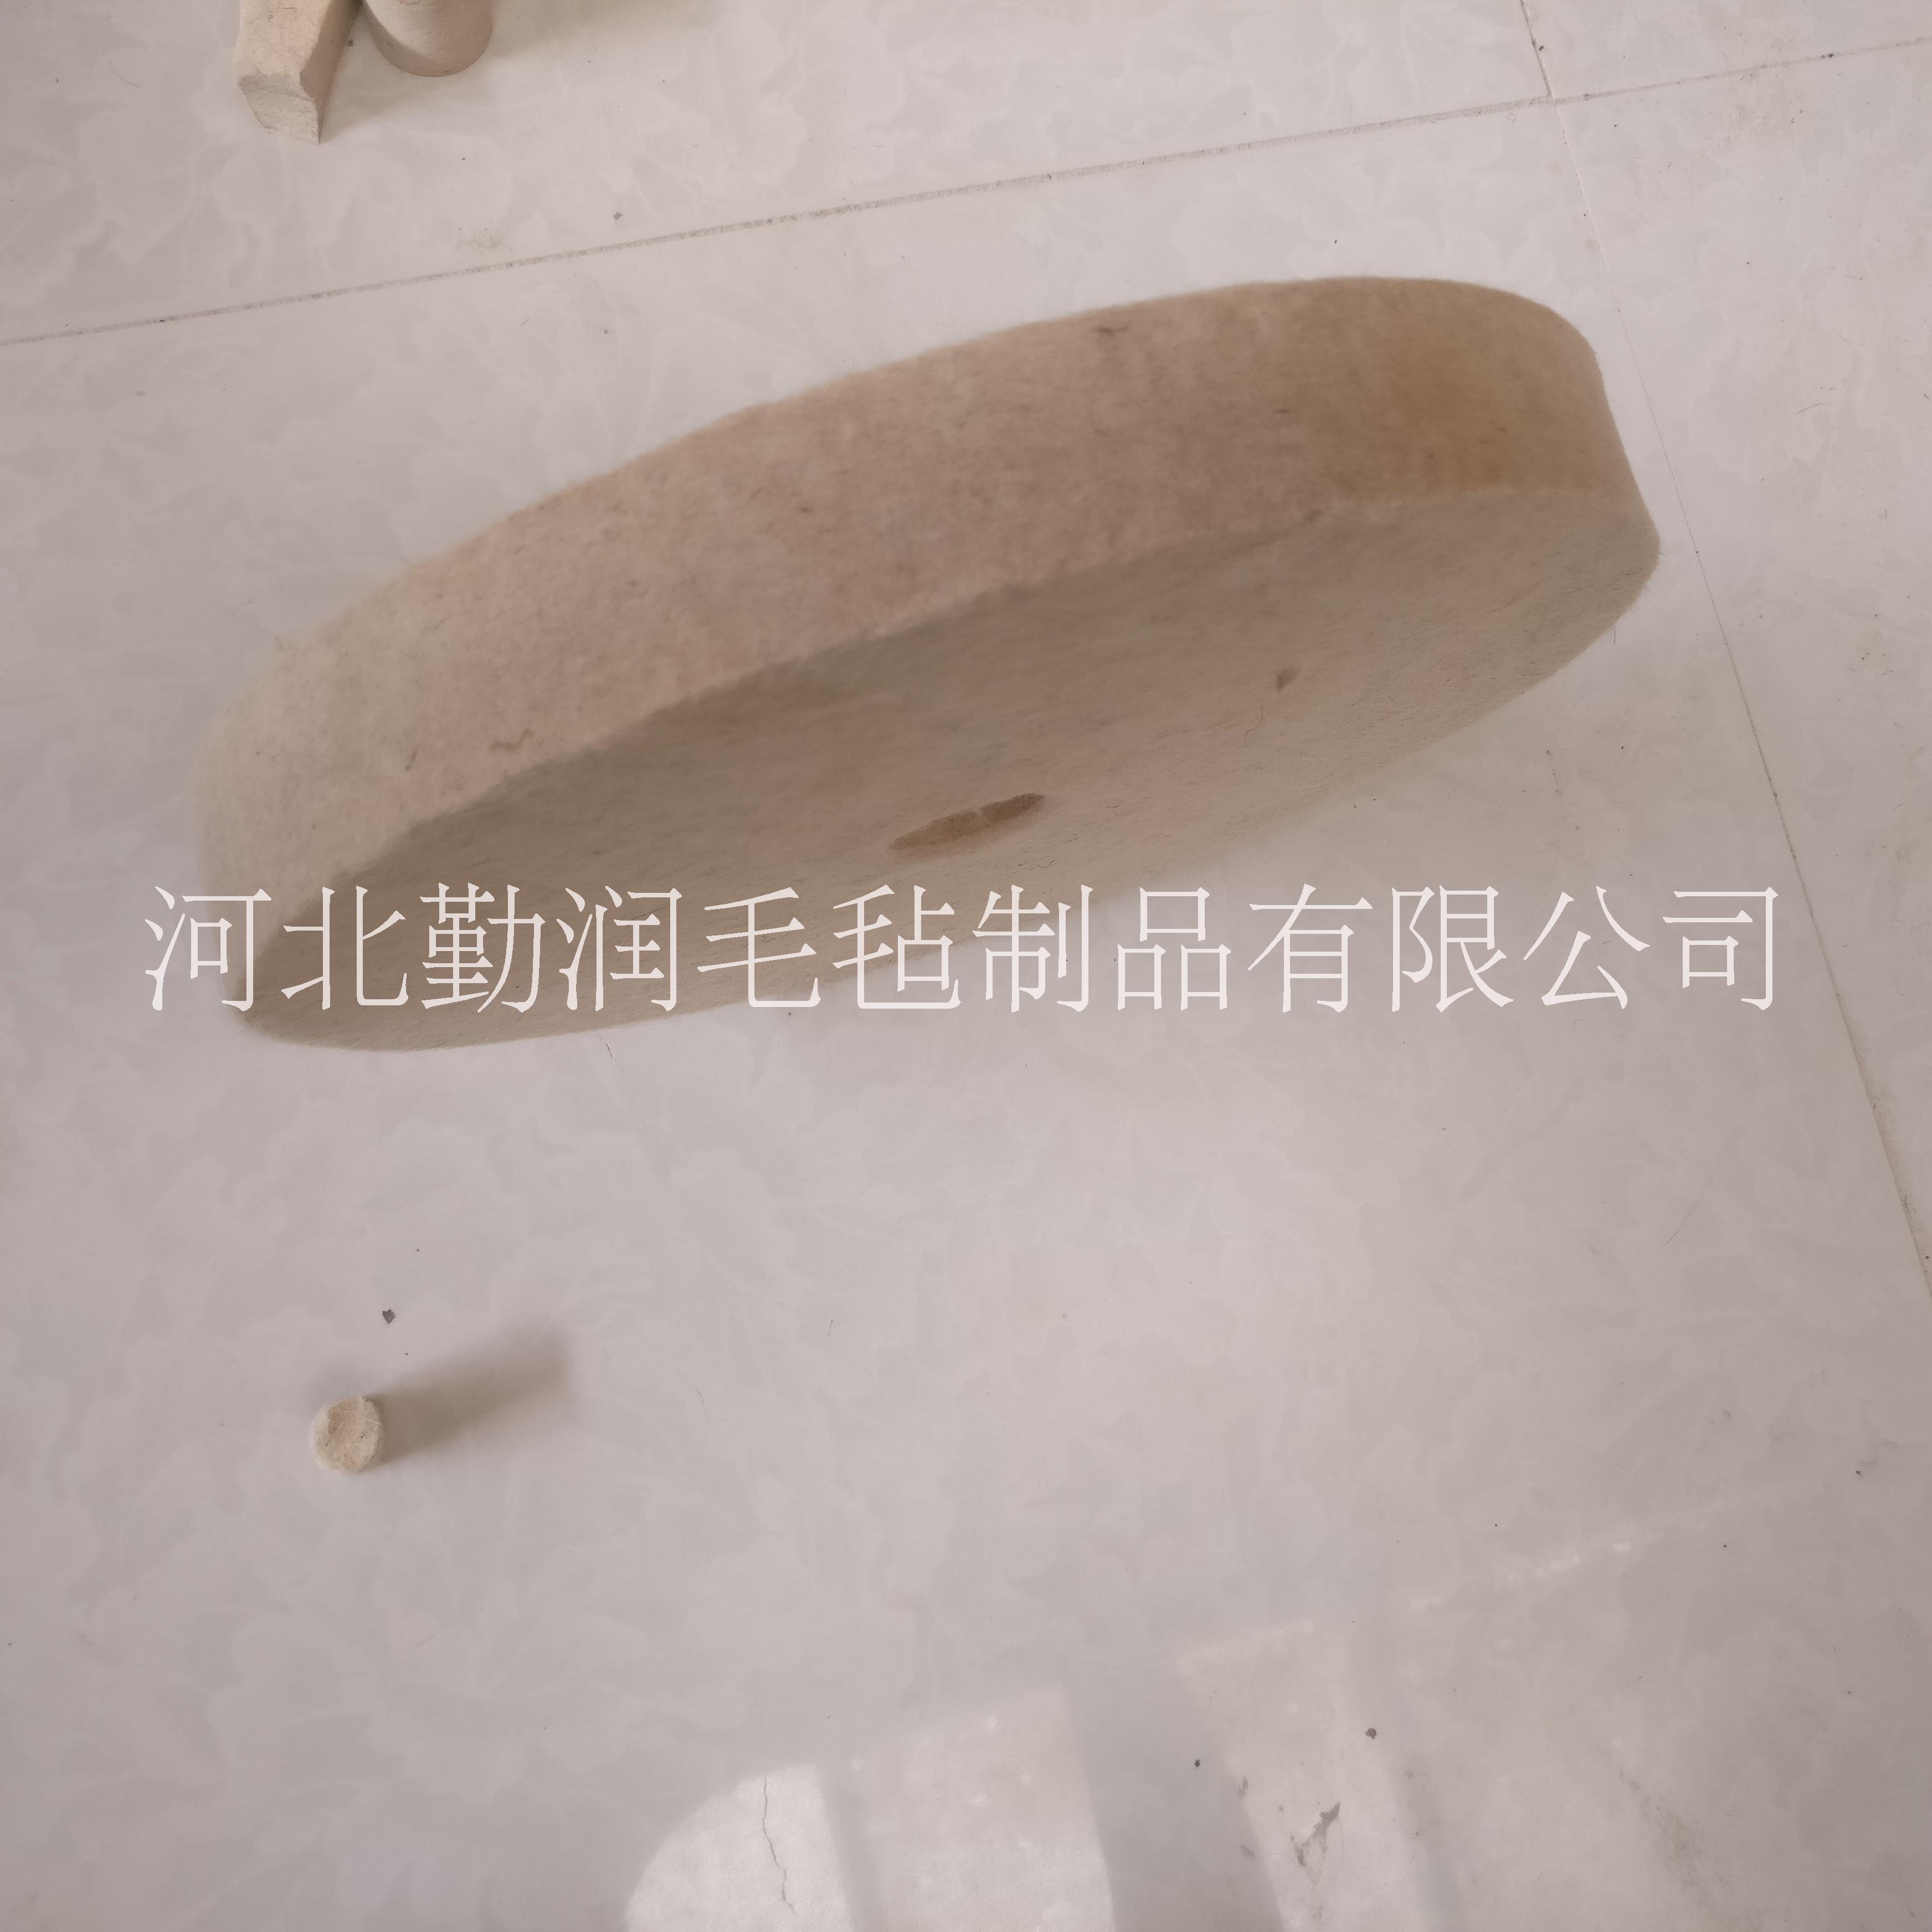 杭州勤润毛毡厂专业生产抛光毛毡轮 耐磨羊毛轮定做 上海优质抛光盘定做 抛光轮图片